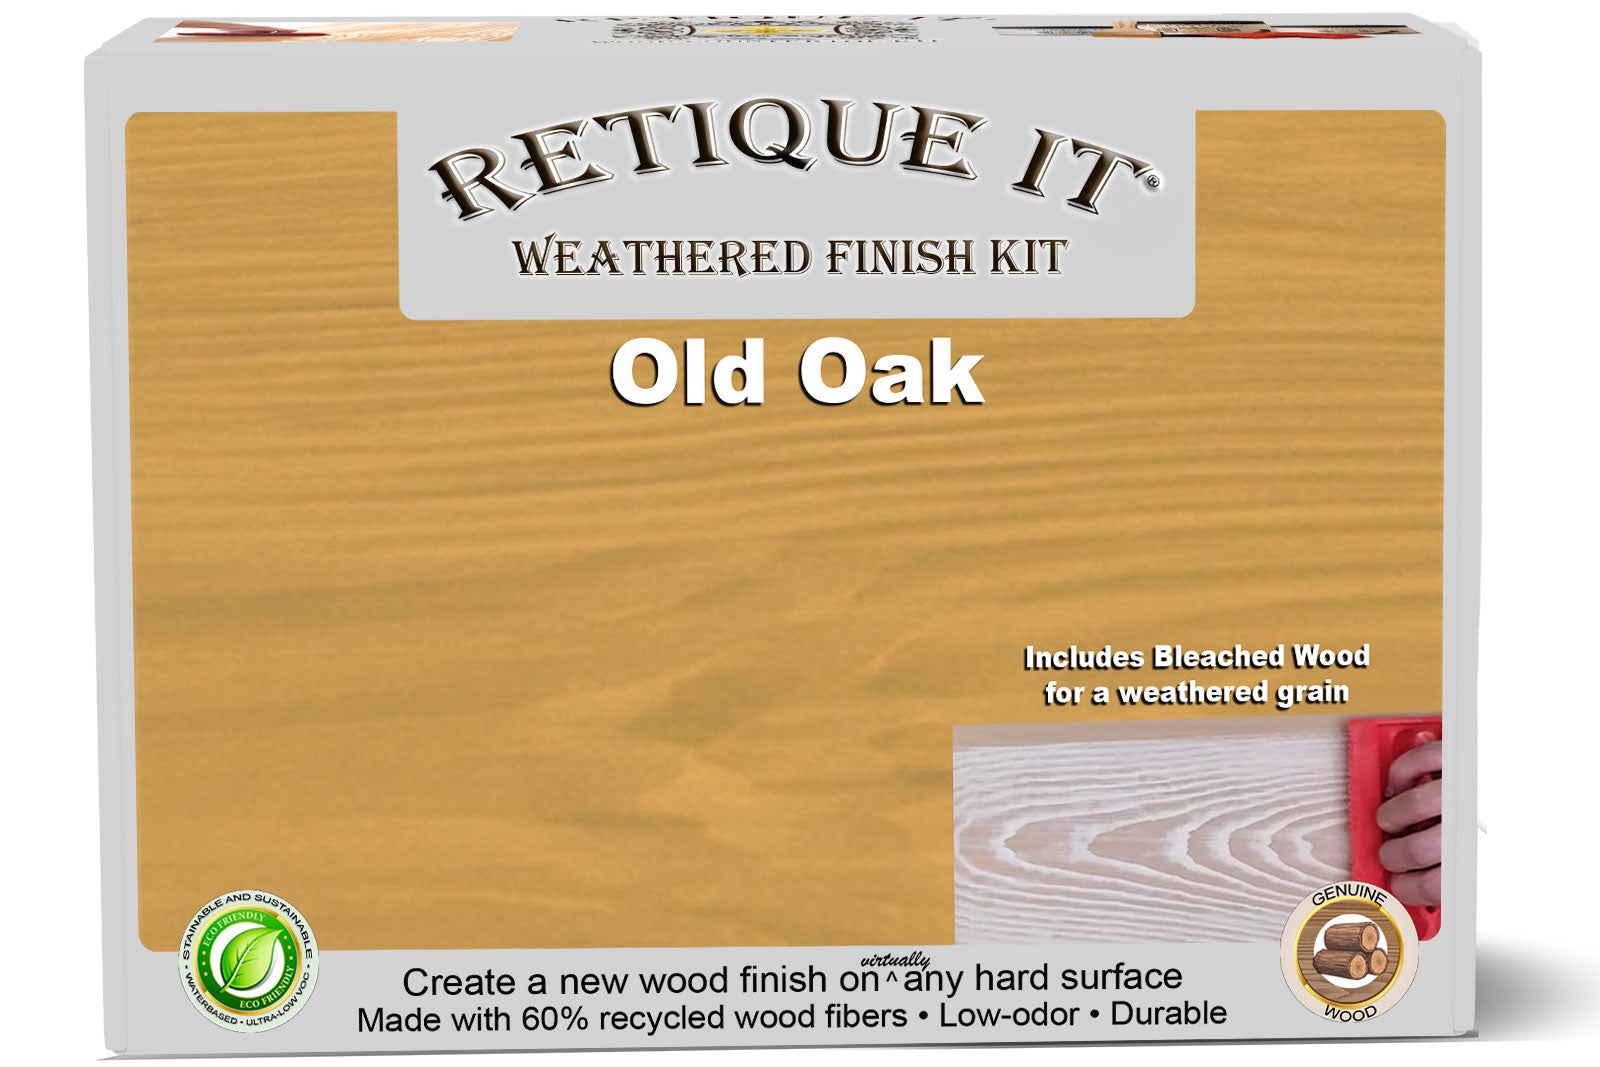 Weathered Finish Kit - Old Oak